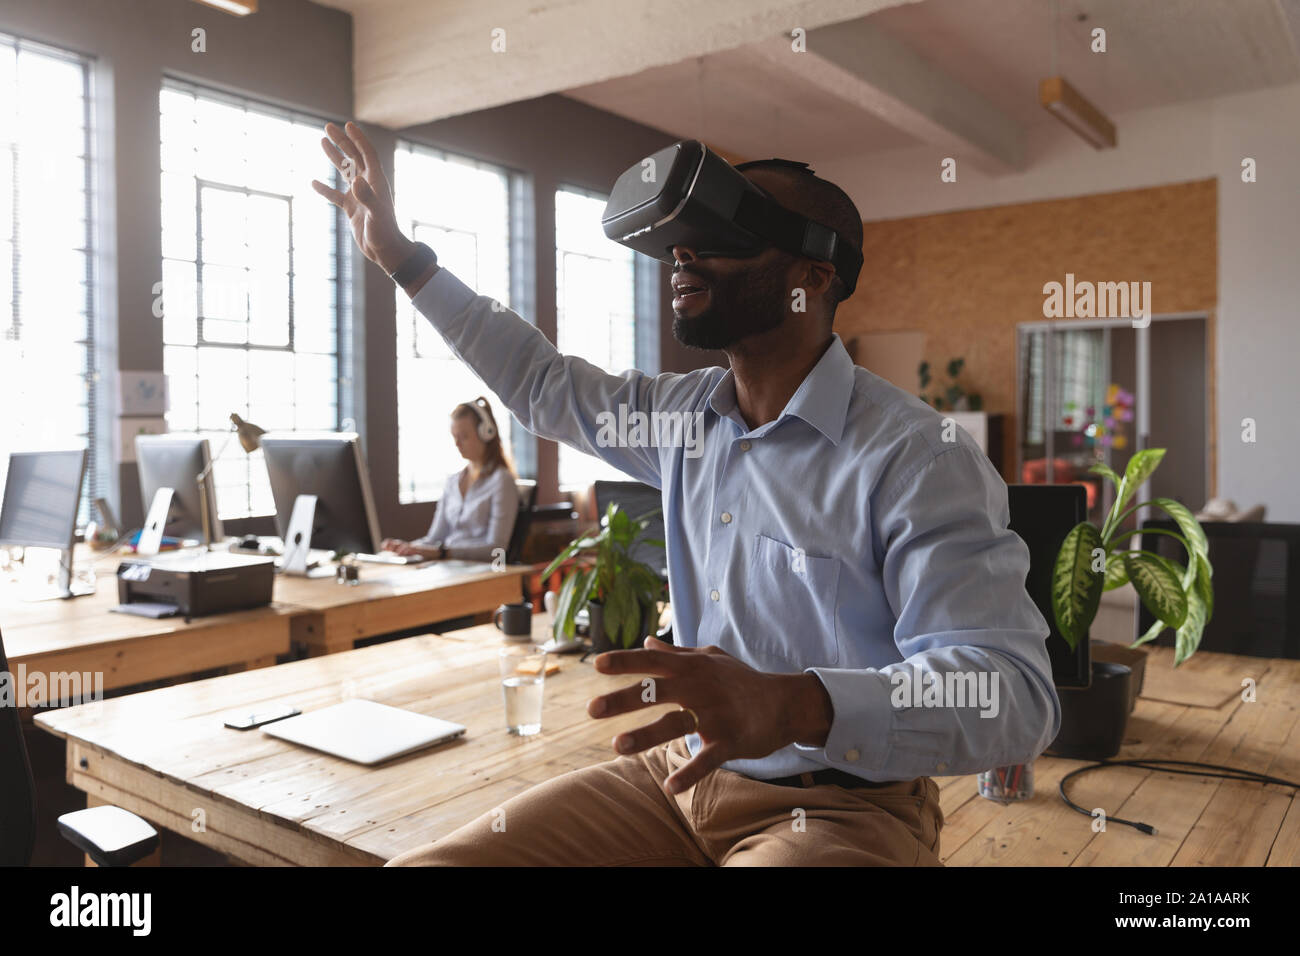 Junge kreative Professionelle man mit VR-Headset in einem sonnendurchfluteten Büro Stockfoto